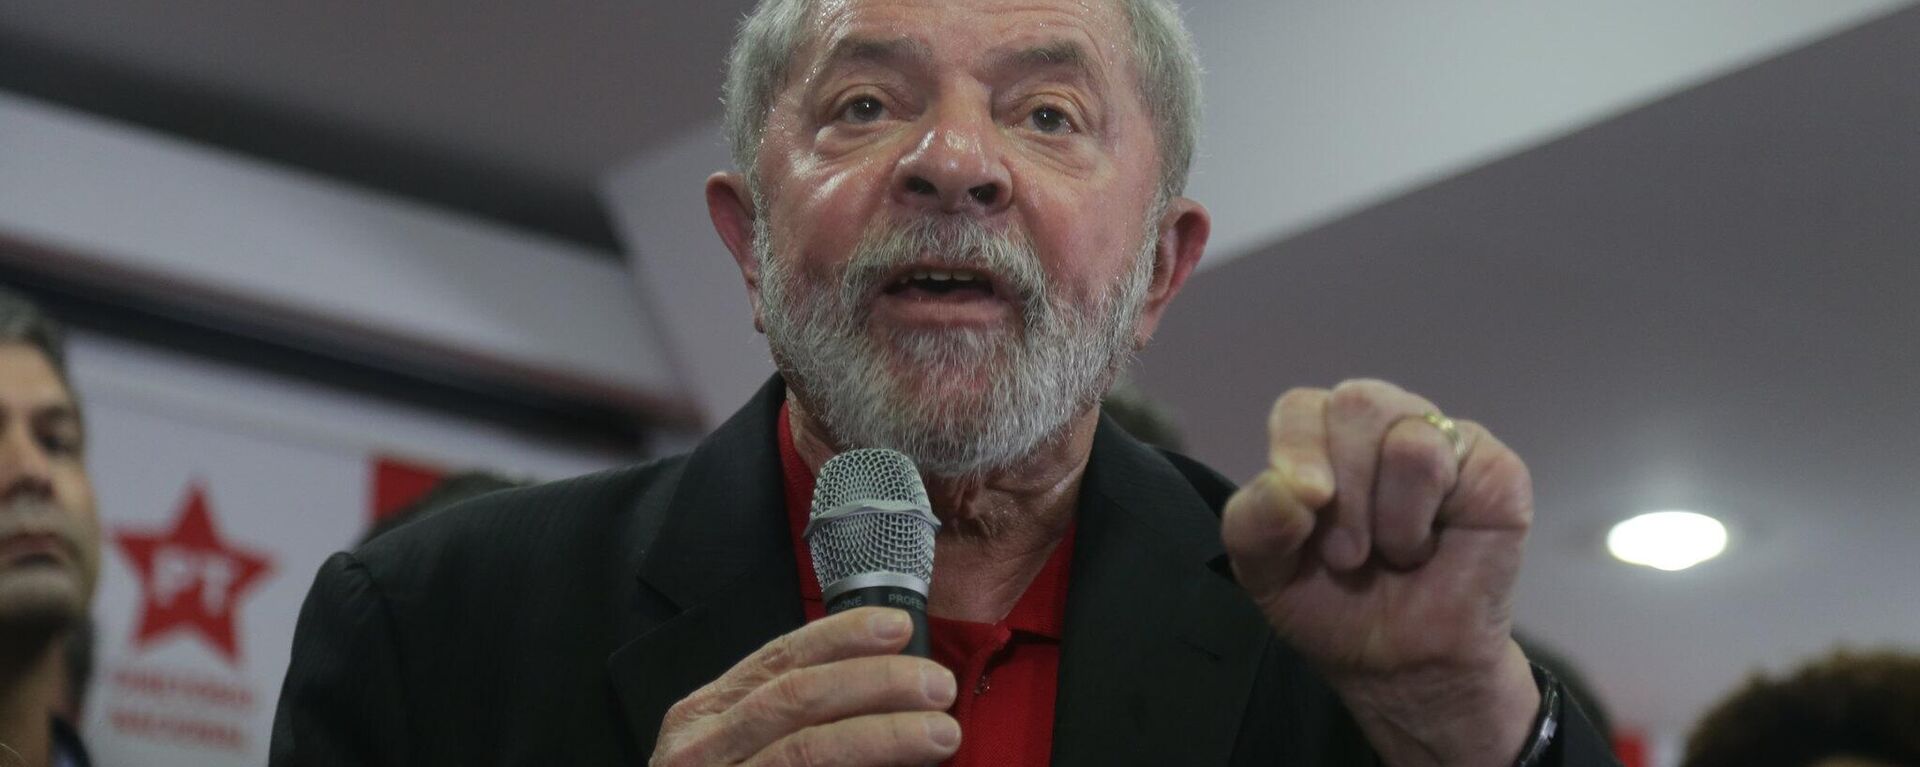 Luiz Inácio Lula da Silva, expresidente brasileño - Sputnik Mundo, 1920, 14.09.2022